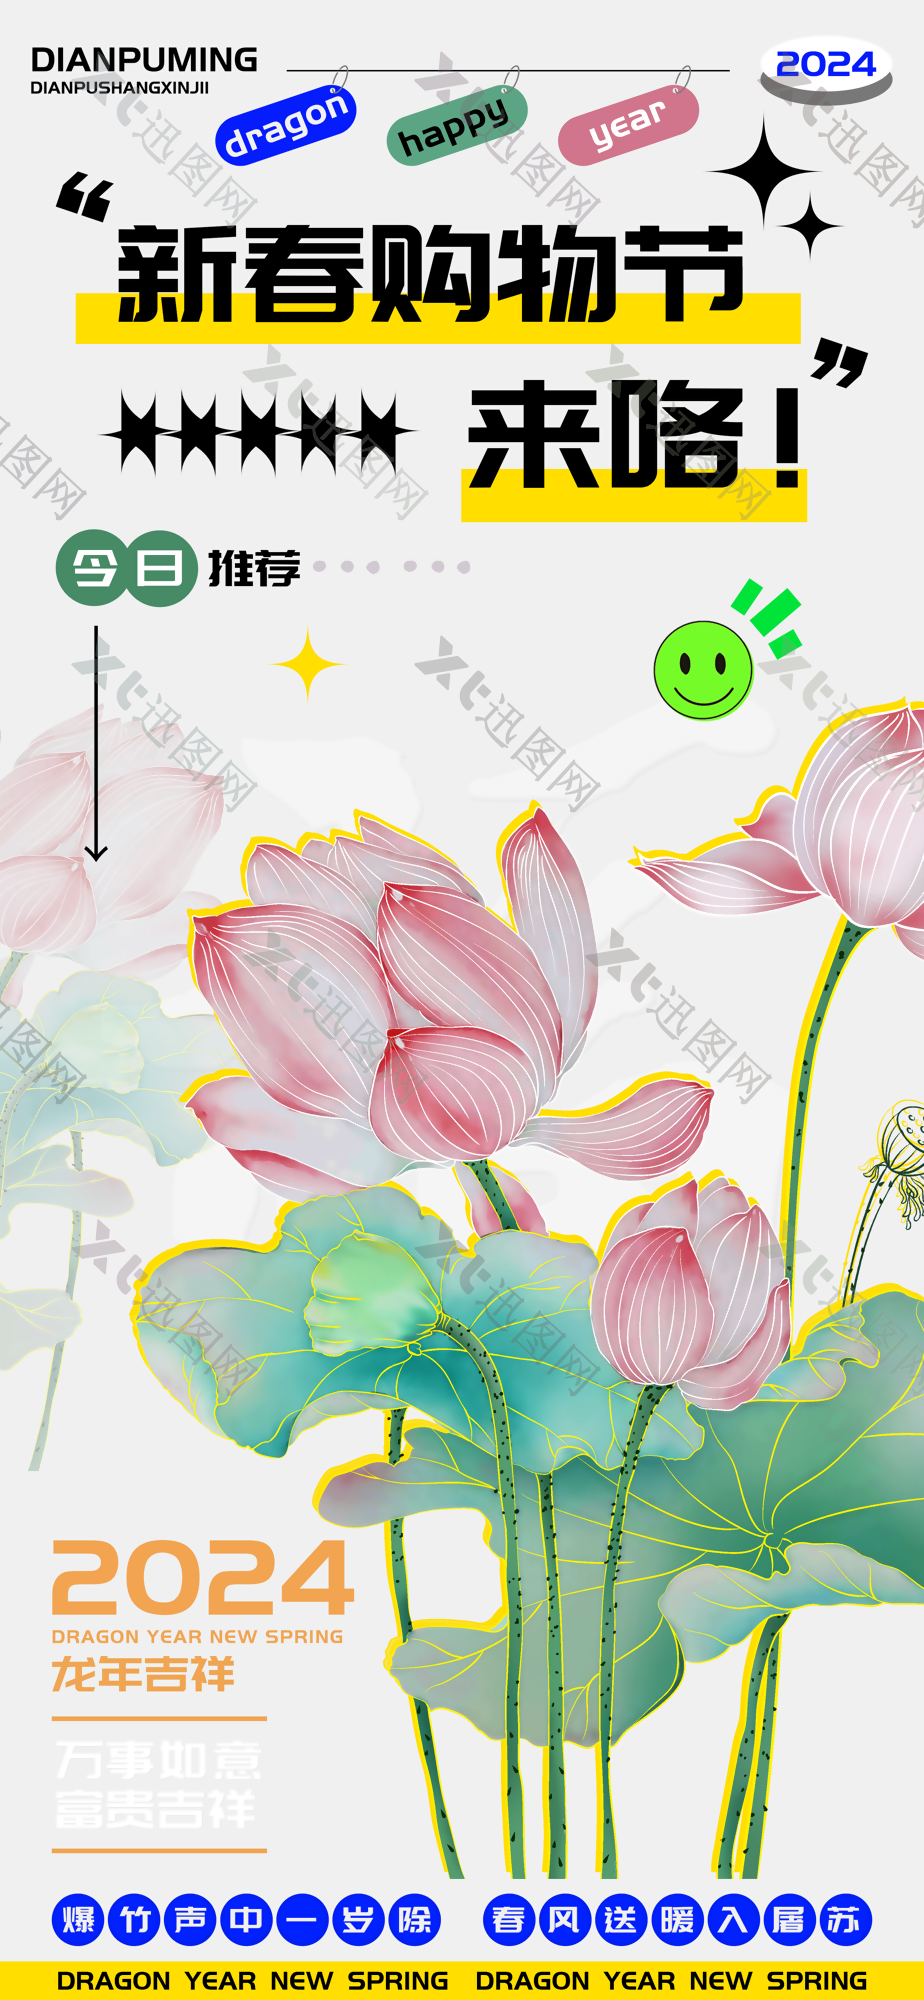 素雅清新手绘风龙年新春购物节海报设计